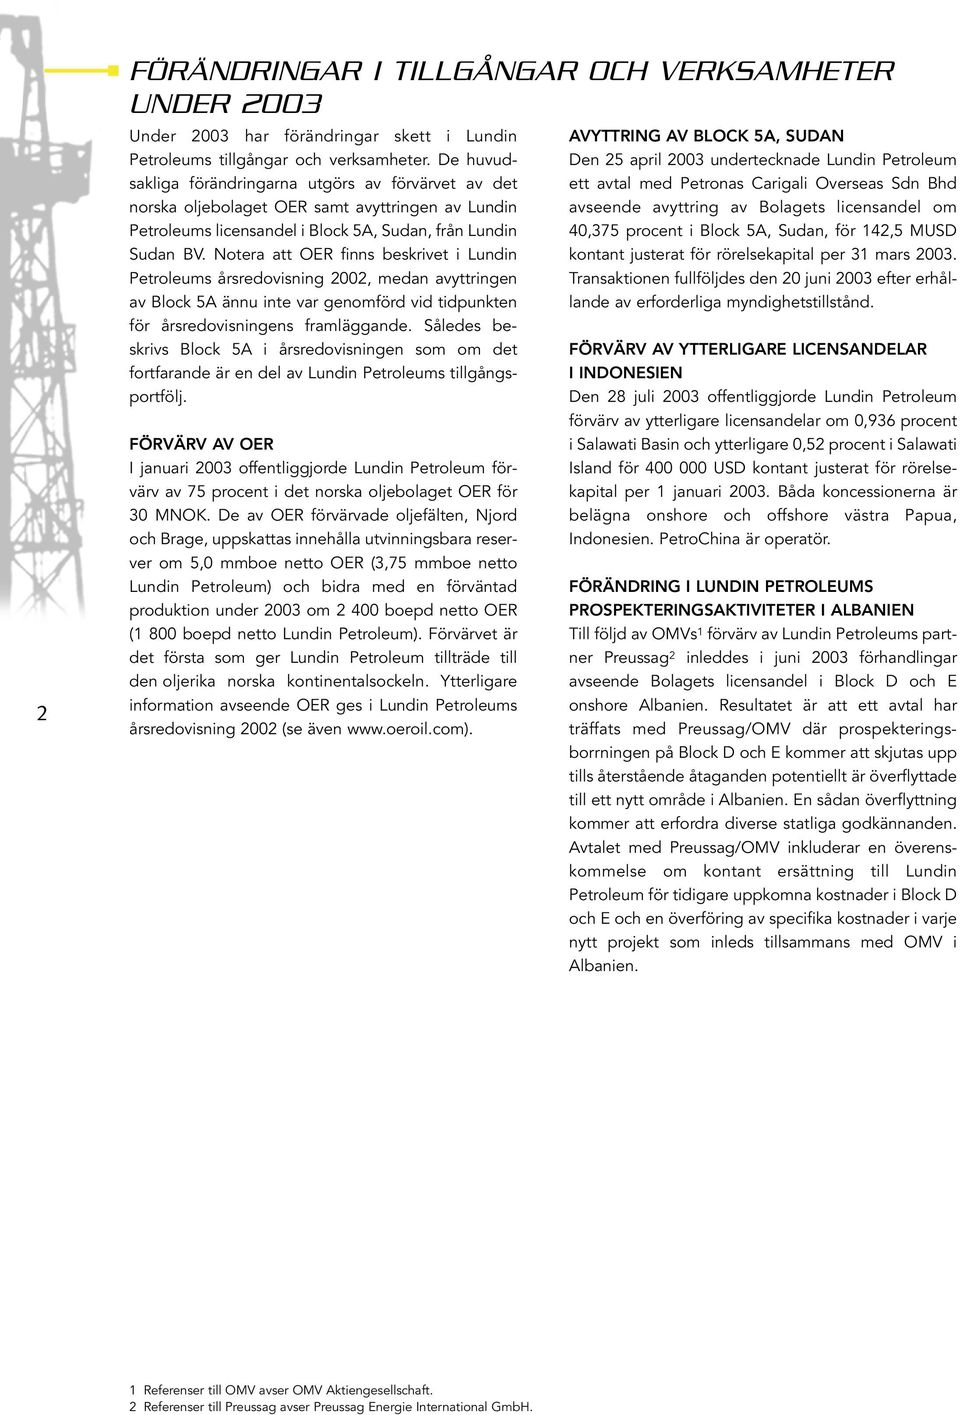 Notera att OER finns beskrivet i Lundin Petroleums årsredovisning 2002, medan avyttringen av Block 5A ännu inte var genomförd vid tidpunkten för årsredovisningens framläggande.